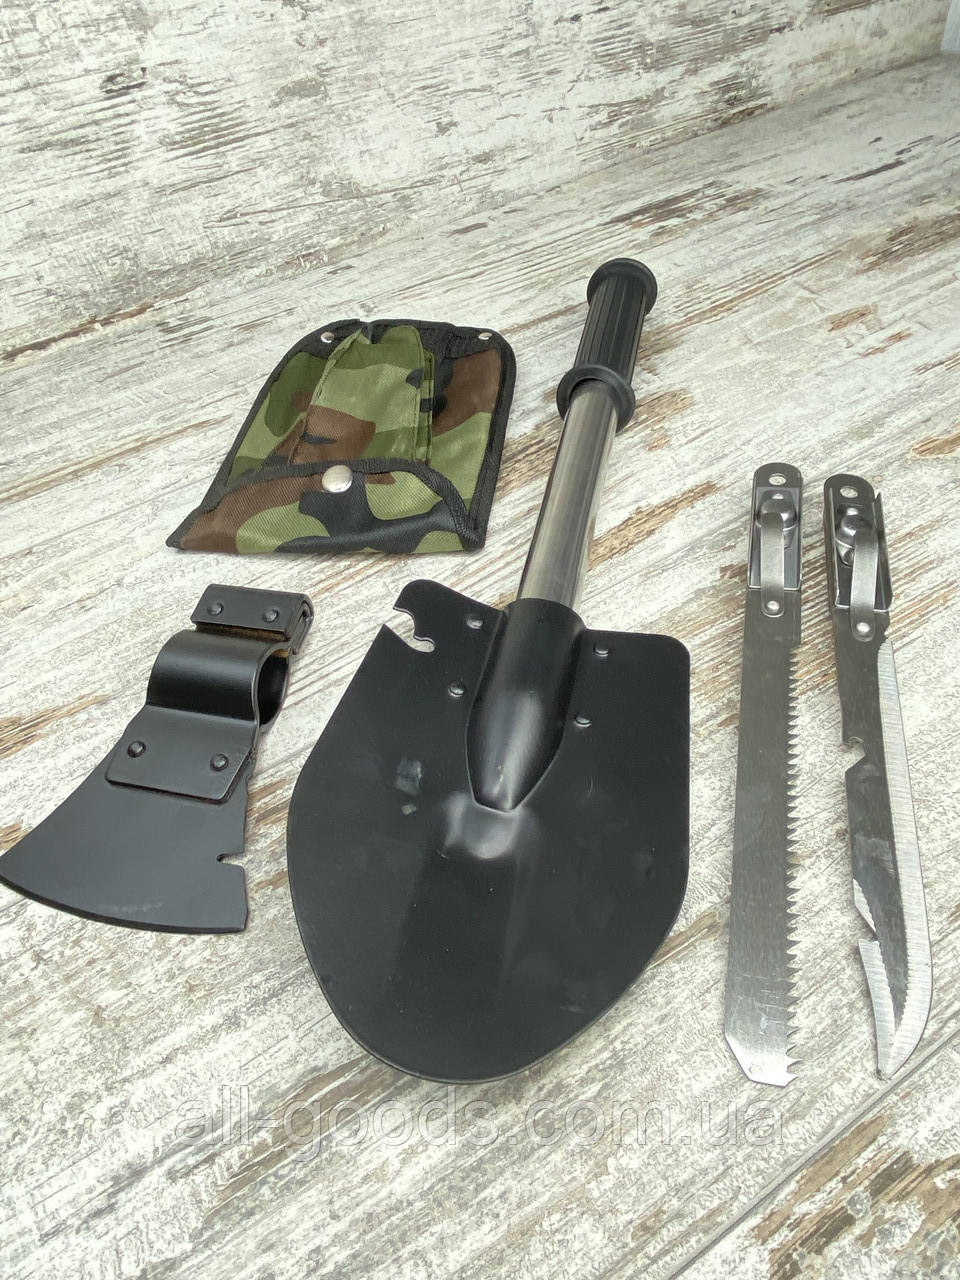 Саперная лопата 5 в 1 Нож Пилка Топор Открывашка. Туристический набор для выживания Туристический топорик All